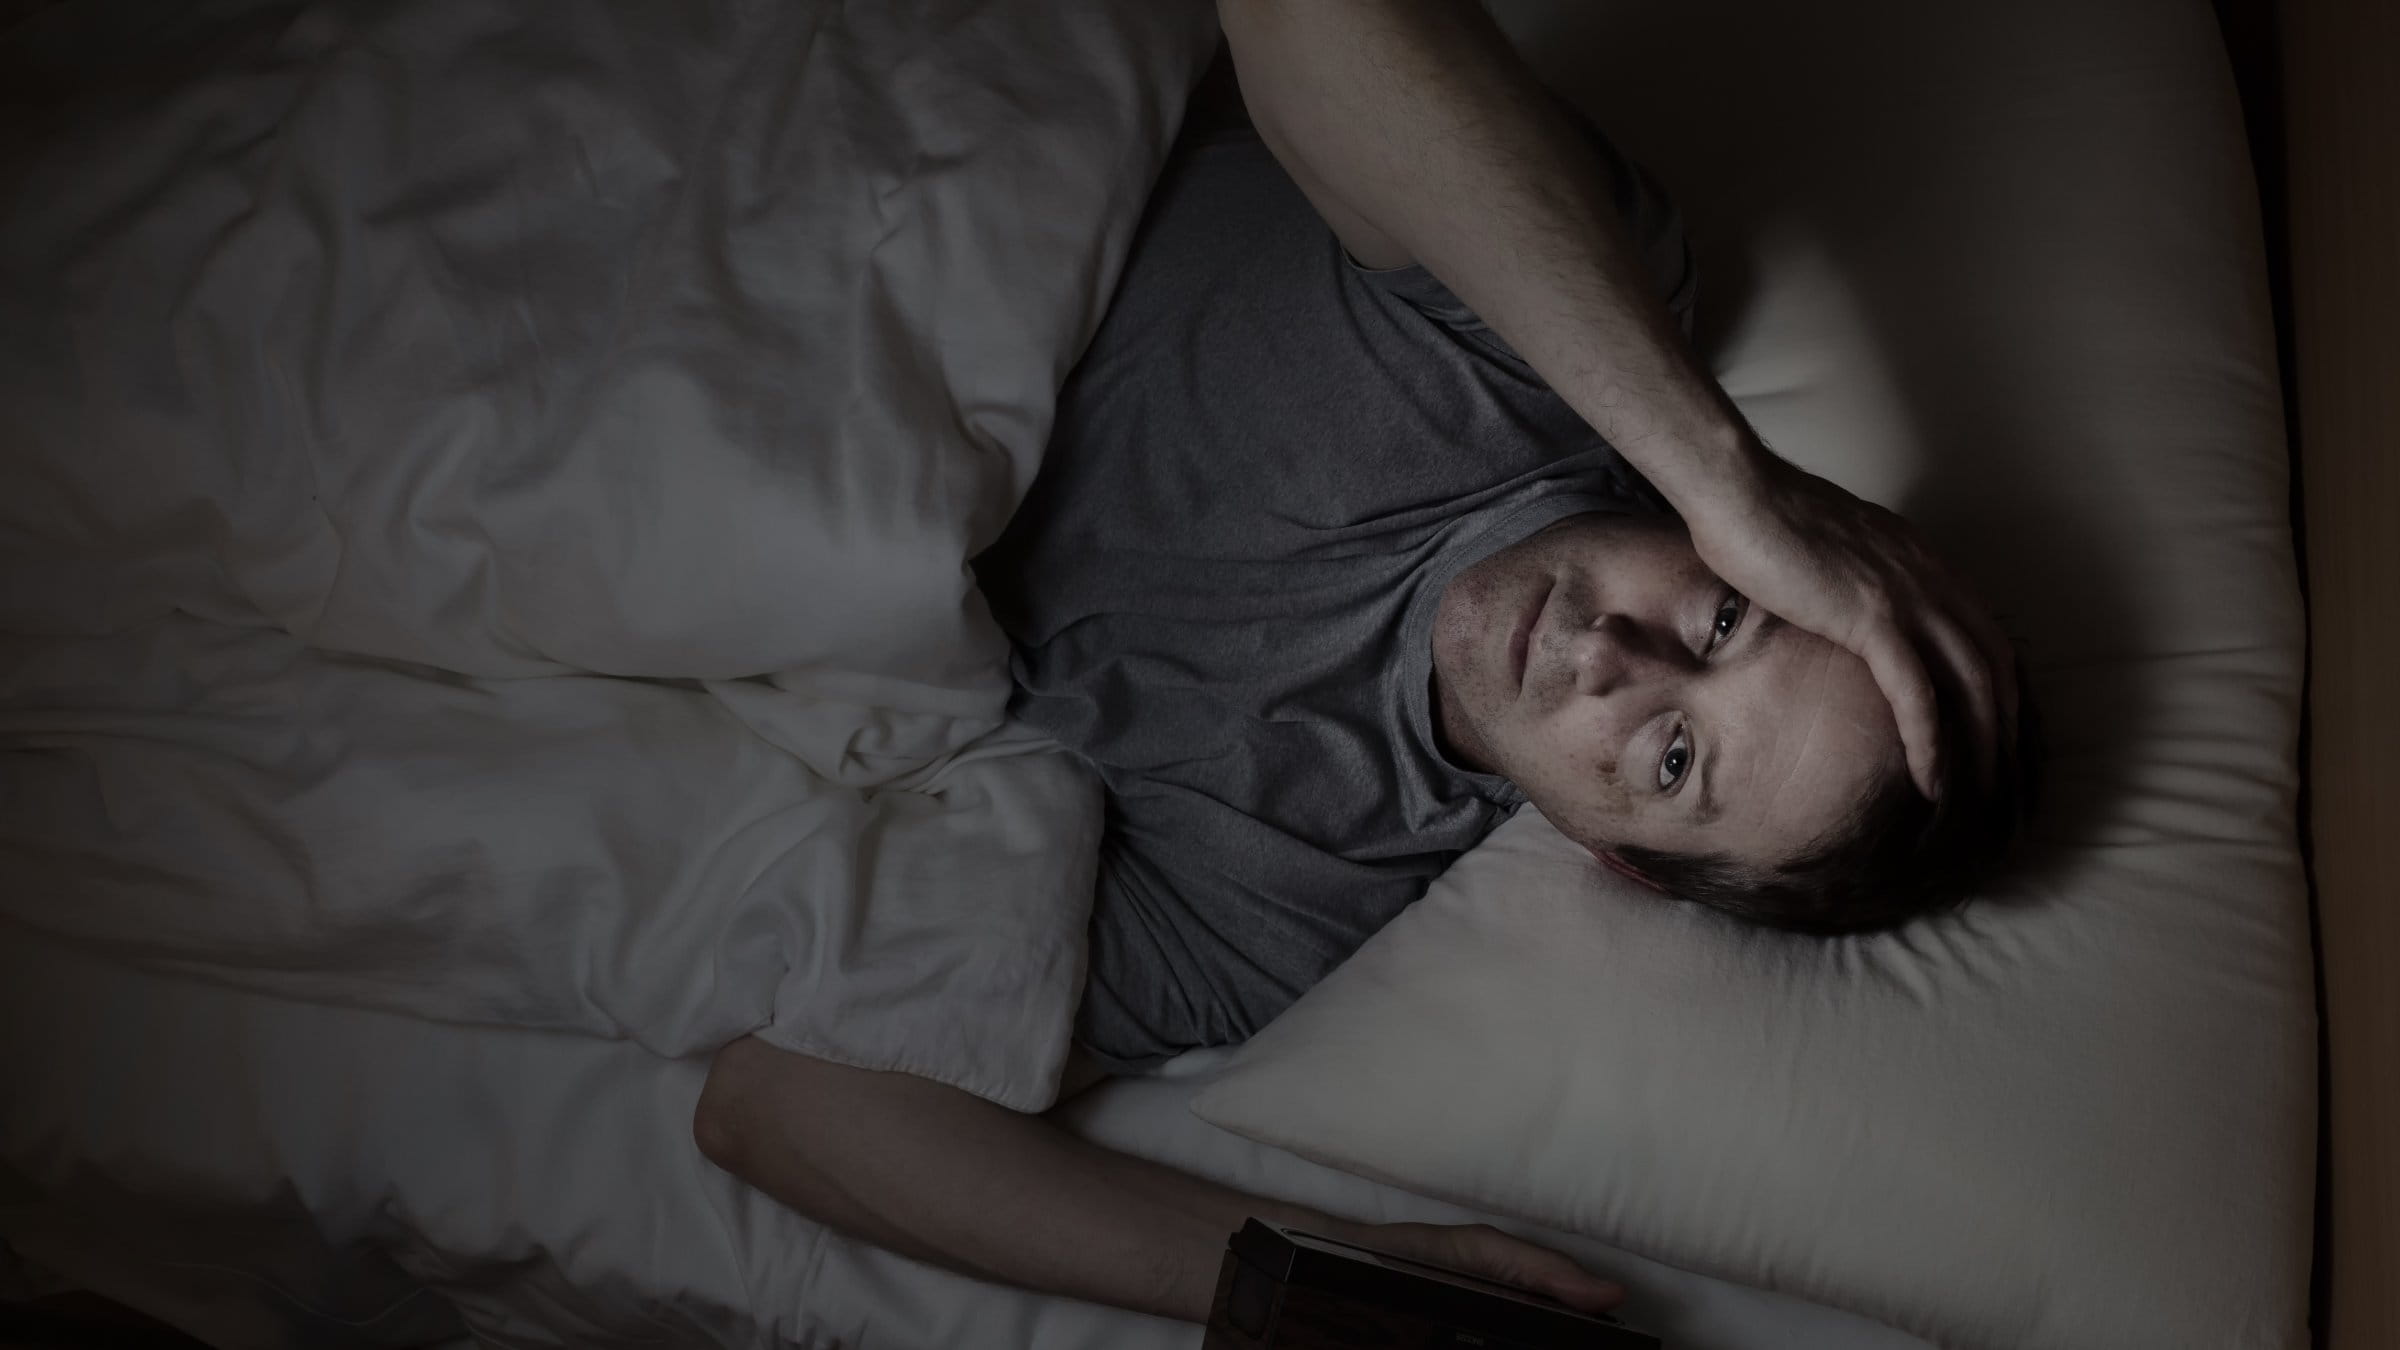 Health experts explain why we feel sleepy at work